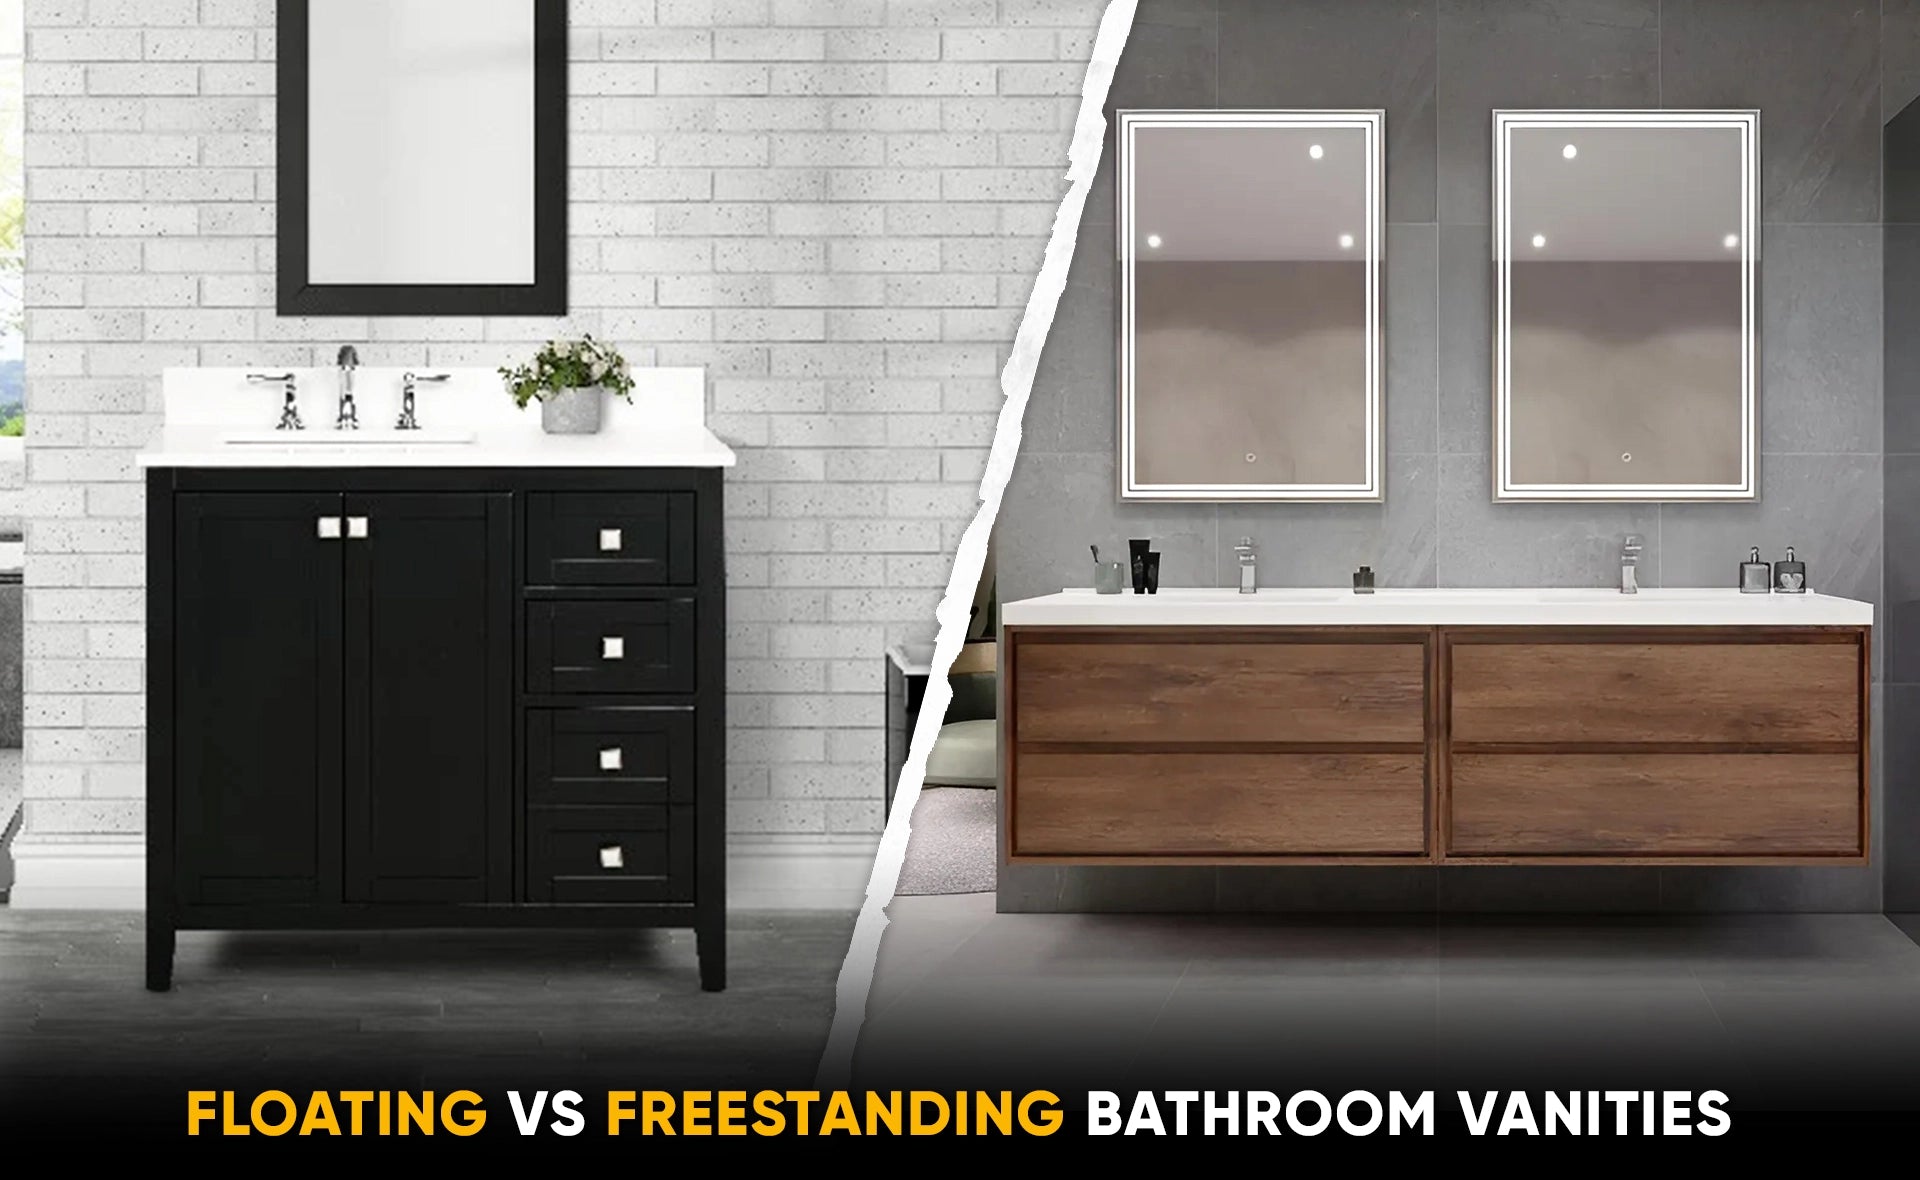 Floating bathroom vanities Vs Freestanding Bathroom vanities